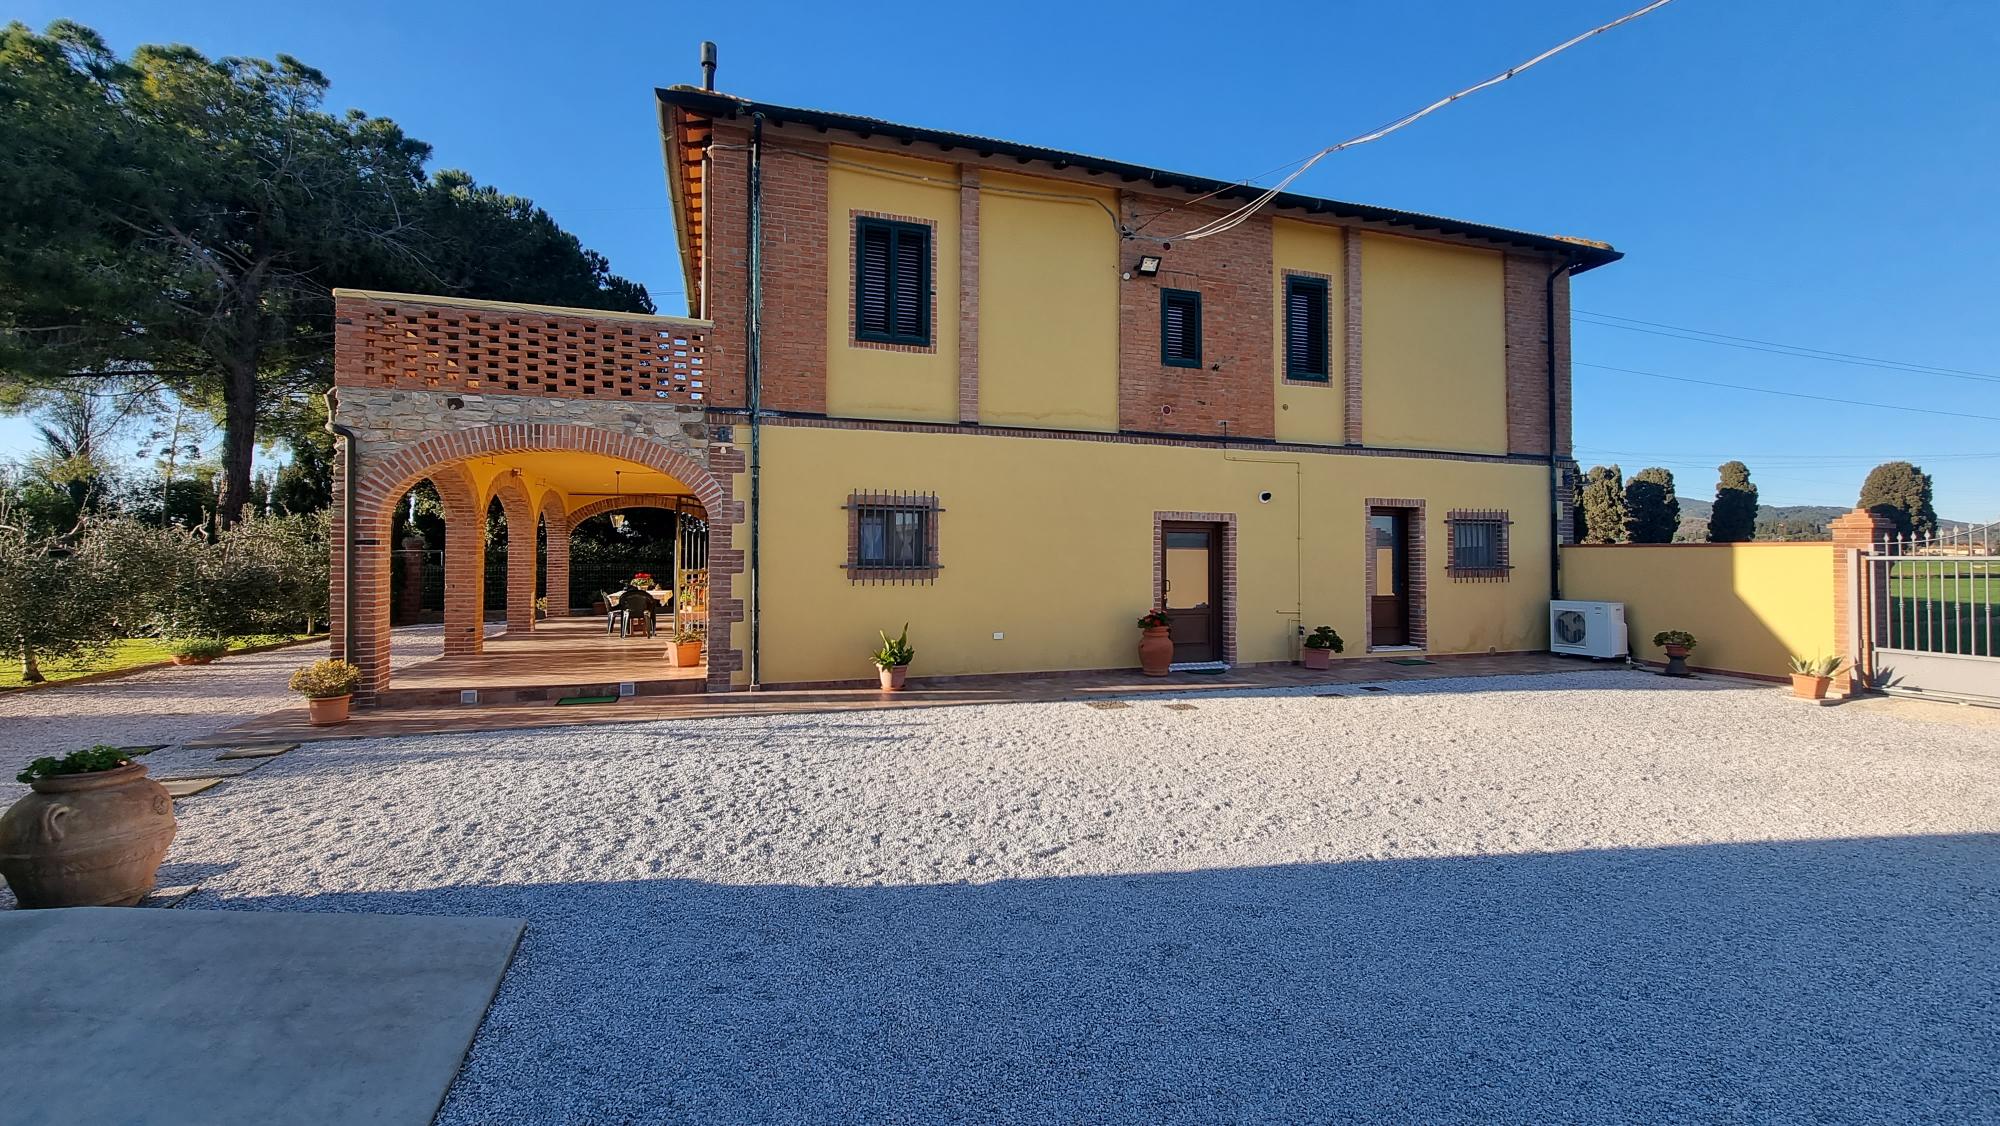 restored-farmhouse-4-beds-close-baratti-gulf-for-sale-tuscany-livorno-campiglia-marittima